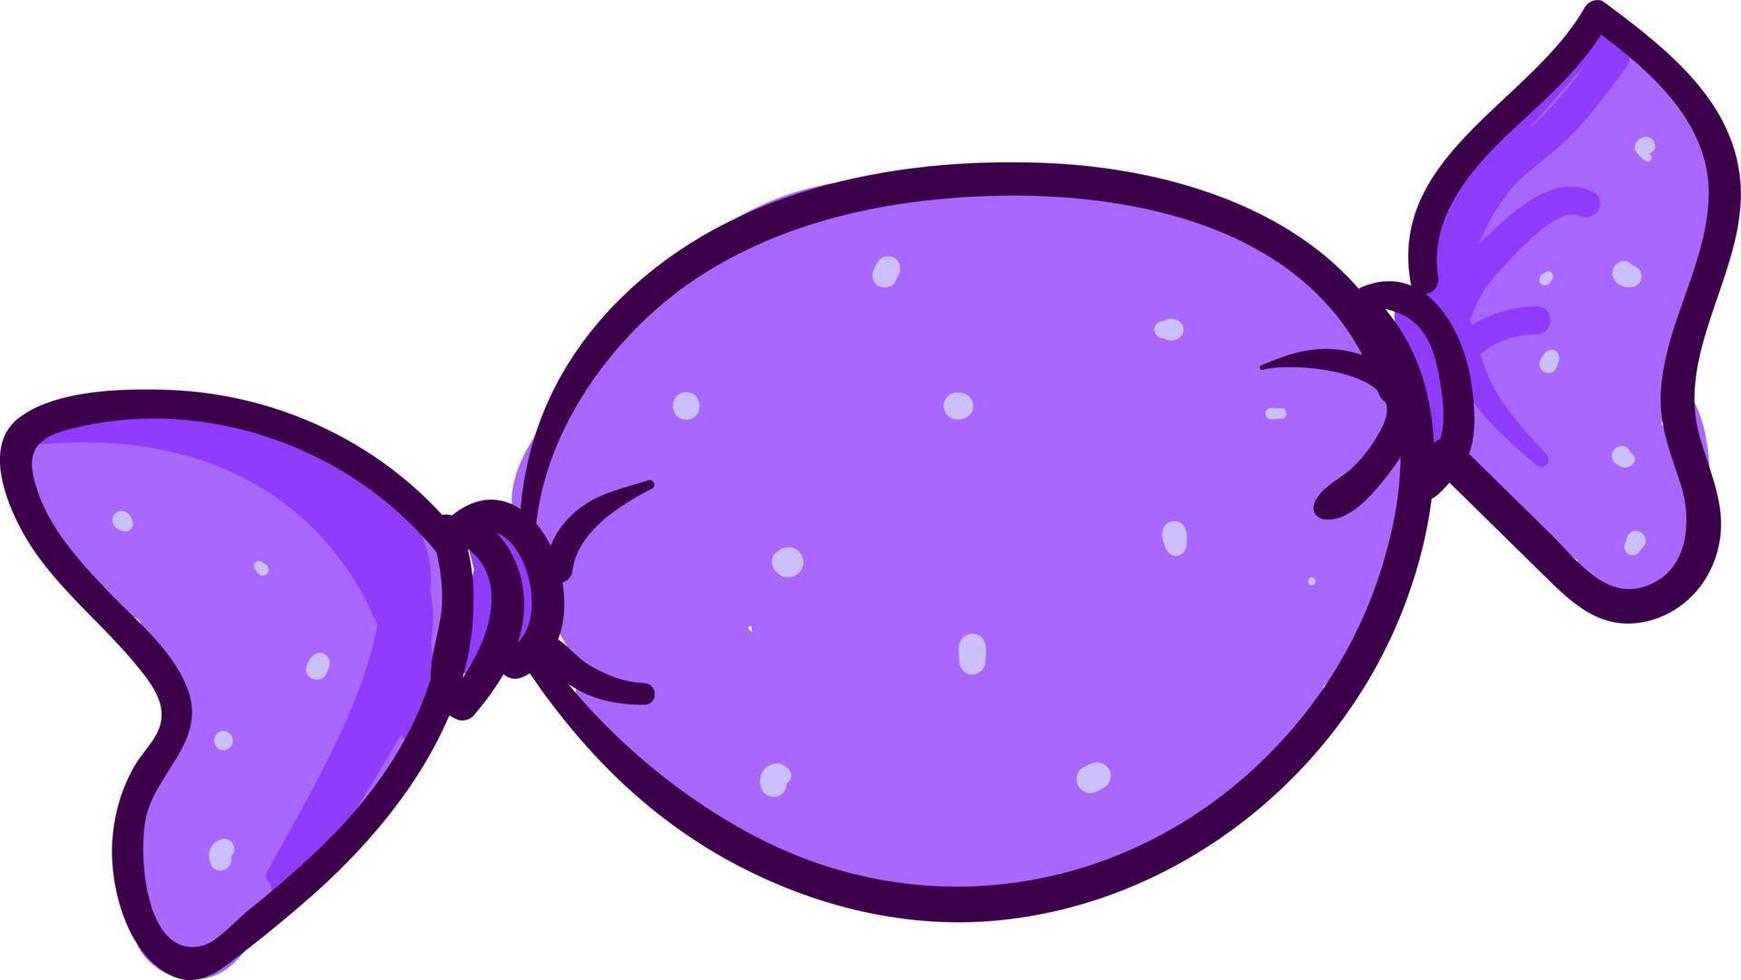 Candy enveloppé violet , illustration, vecteur sur fond blanc